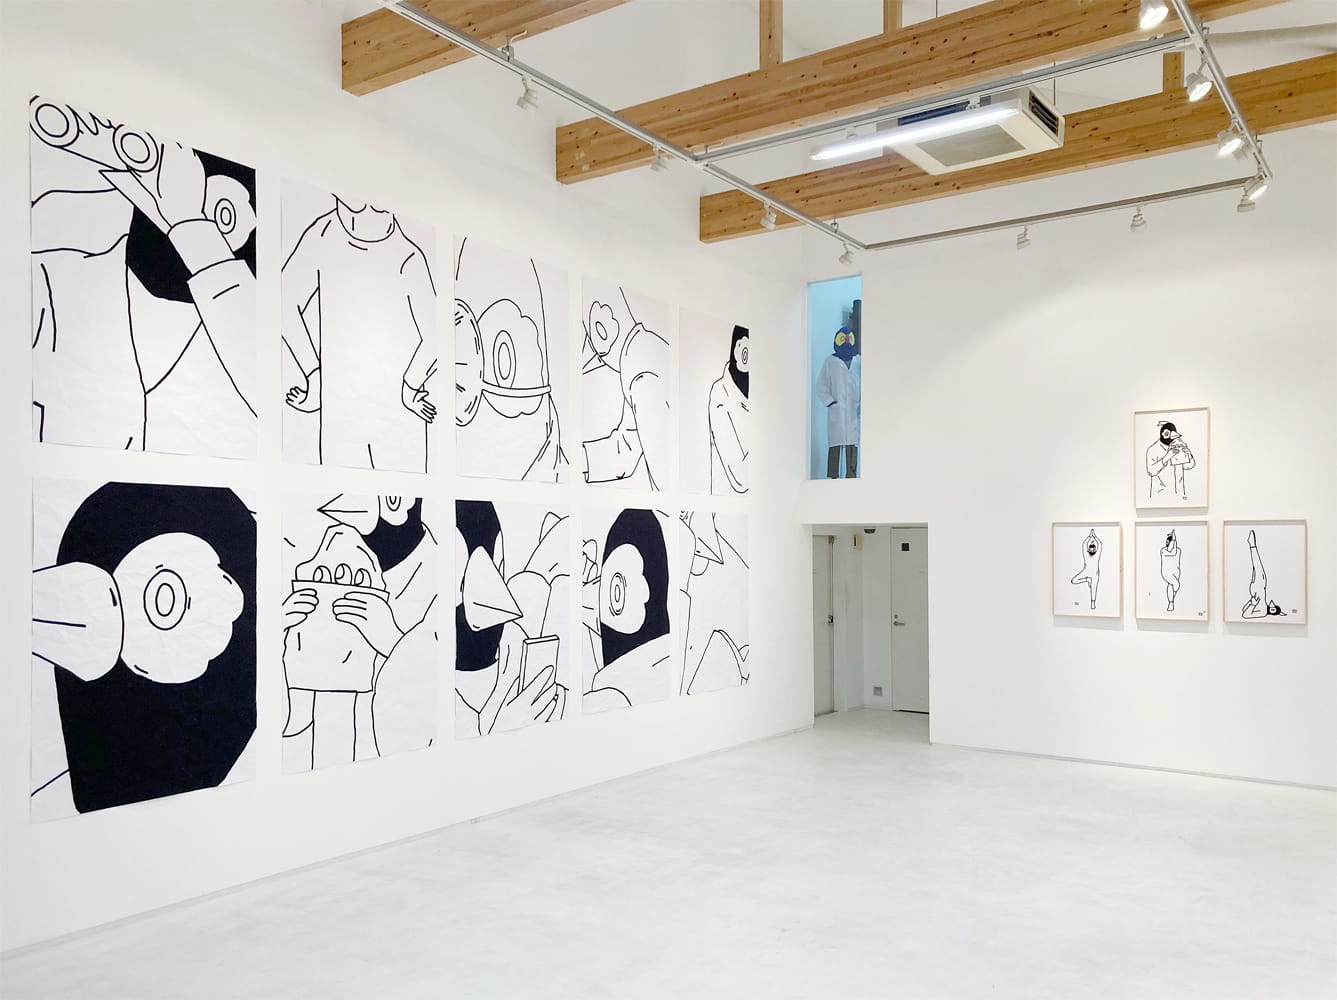 台湾のアーティスト・張騰遠の個展「NEW NORMAL」、Gallery Nomartにて。2020年の展覧会延期、オンライン個展「Human Being:COVID-19」を経て約2年半ぶりのギャラリー展示。